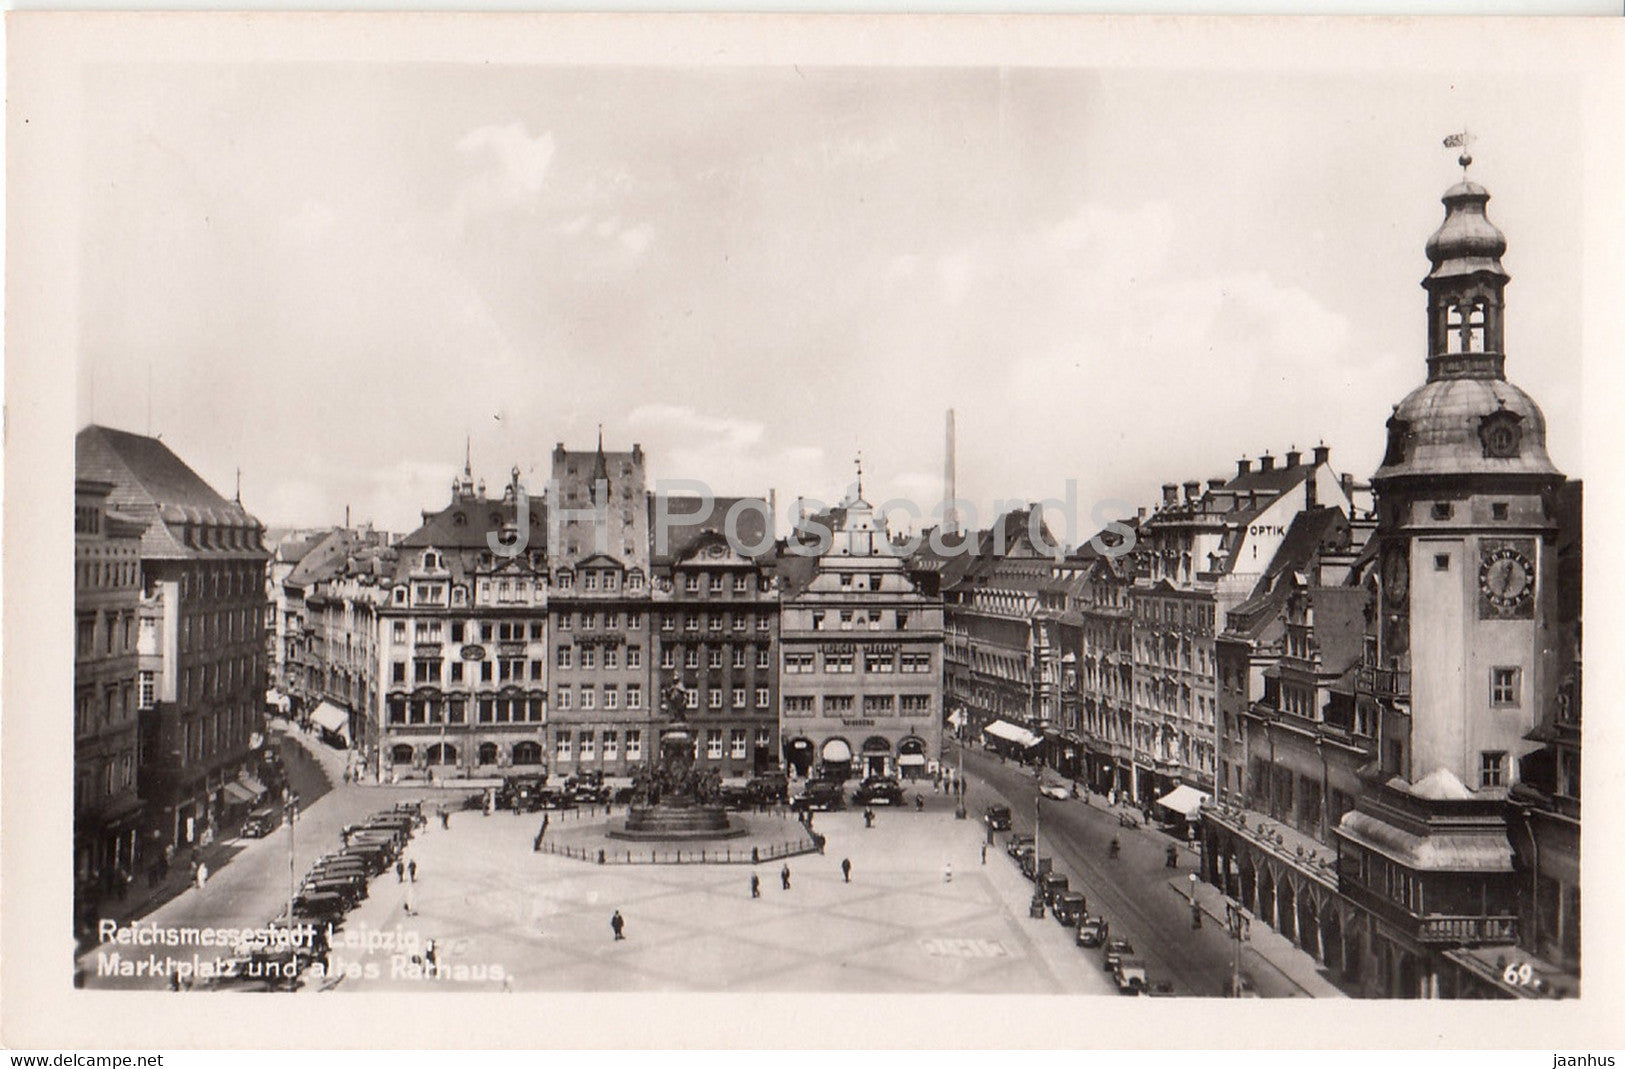 Reichsmessestadt Leipzig - Marktplatz und altes Rathaus - old postcard - Germany - unused - JH Postcards